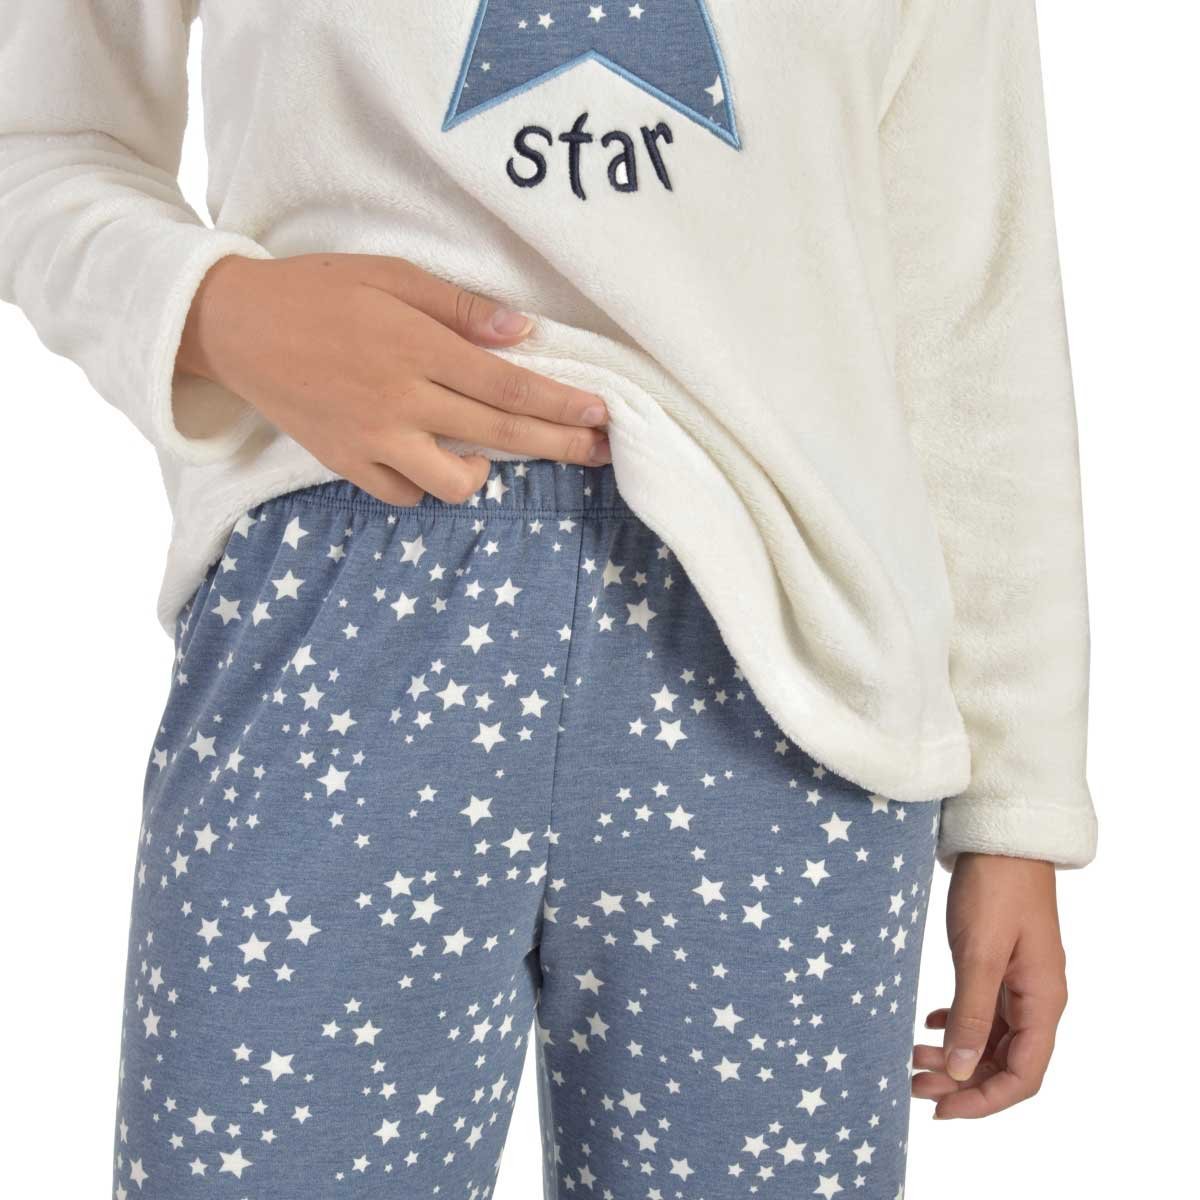 Pijama para Dama Fleece Saco Y Pantalon Creaciones Parisina